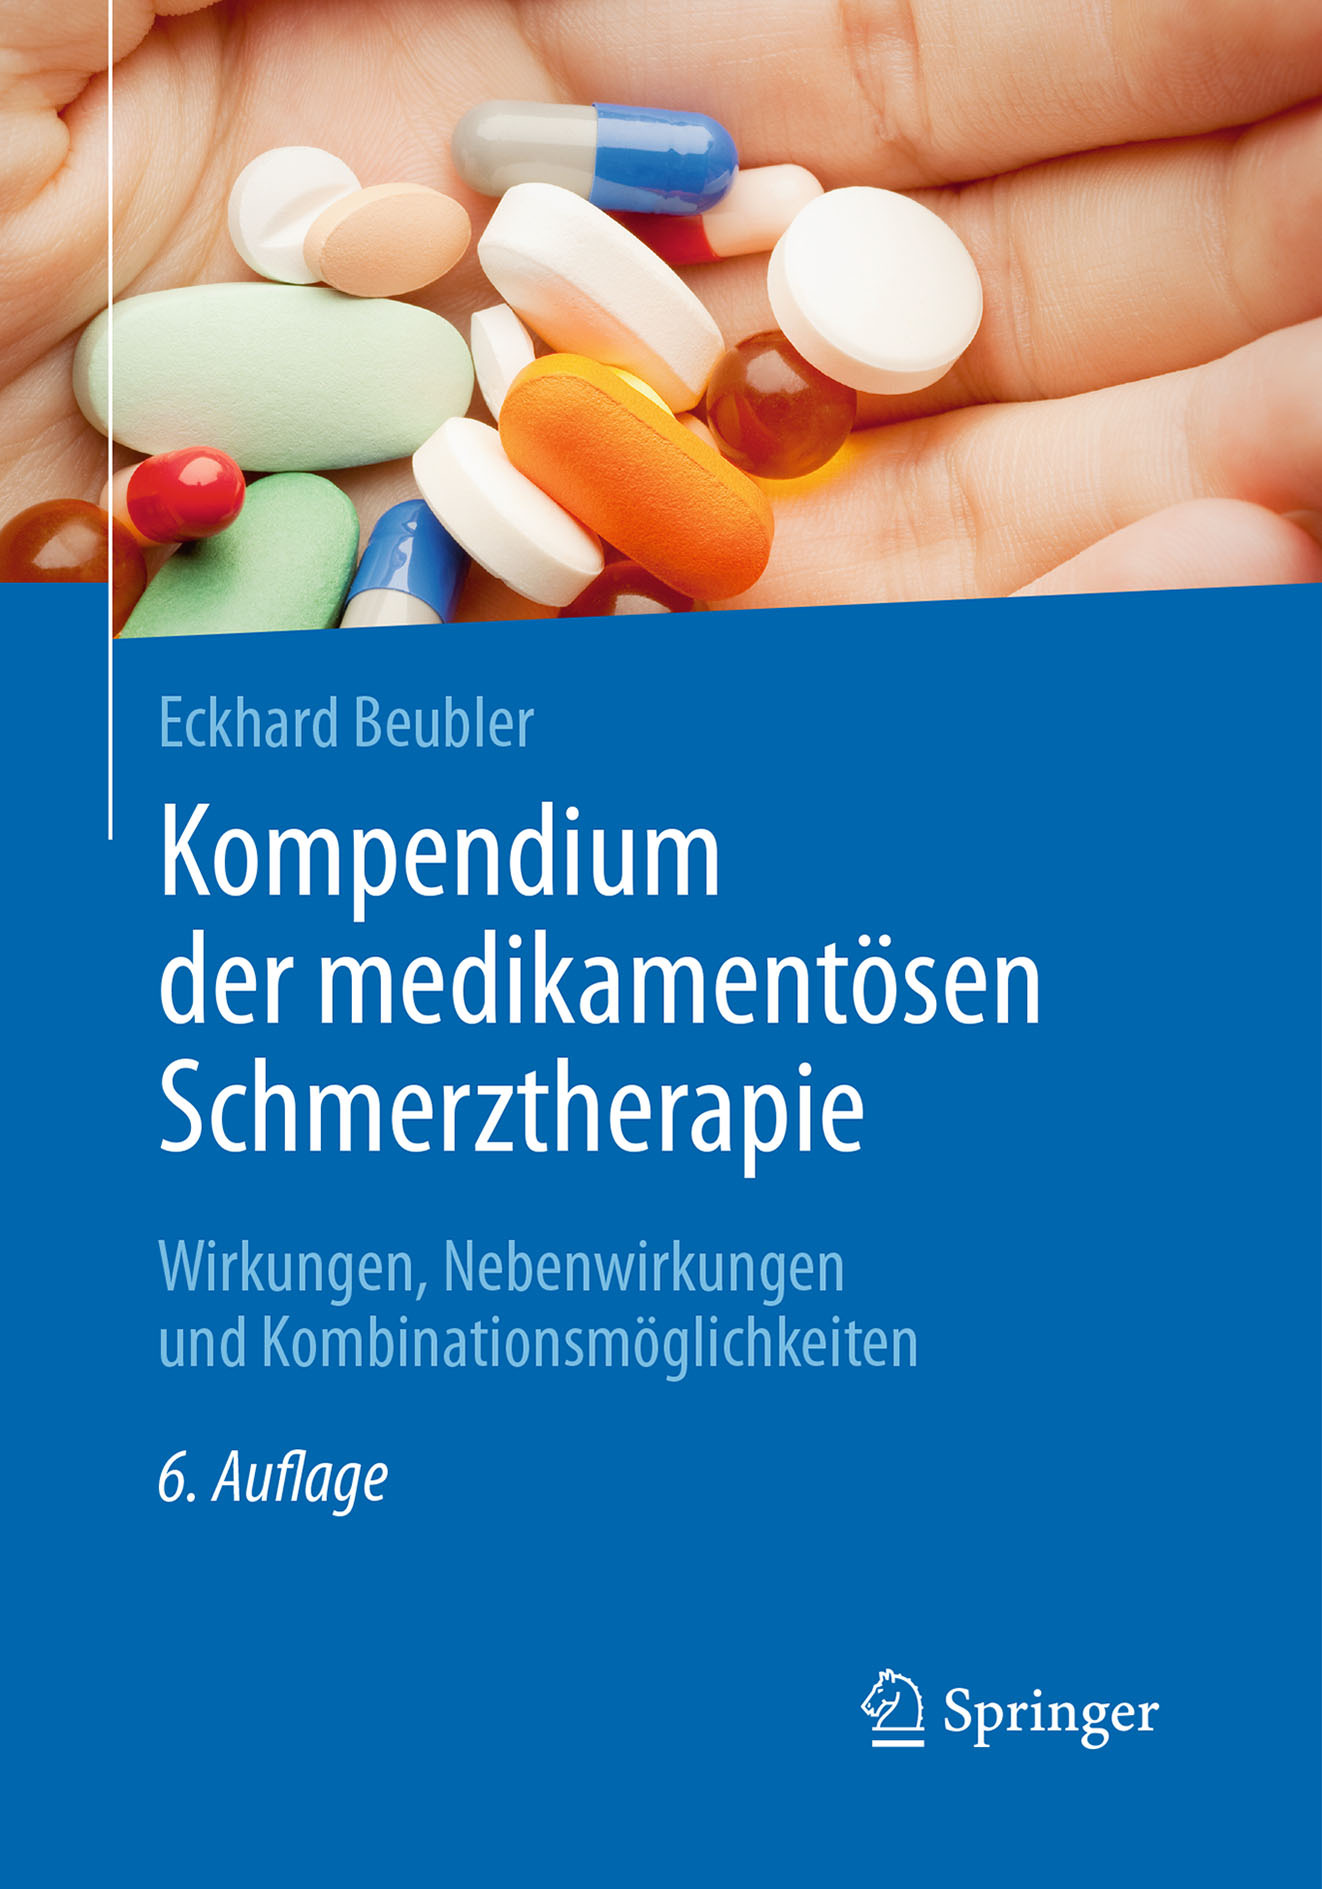 Beubler, Eckhard - Kompendium der medikamentösen Schmerztherapie, ebook